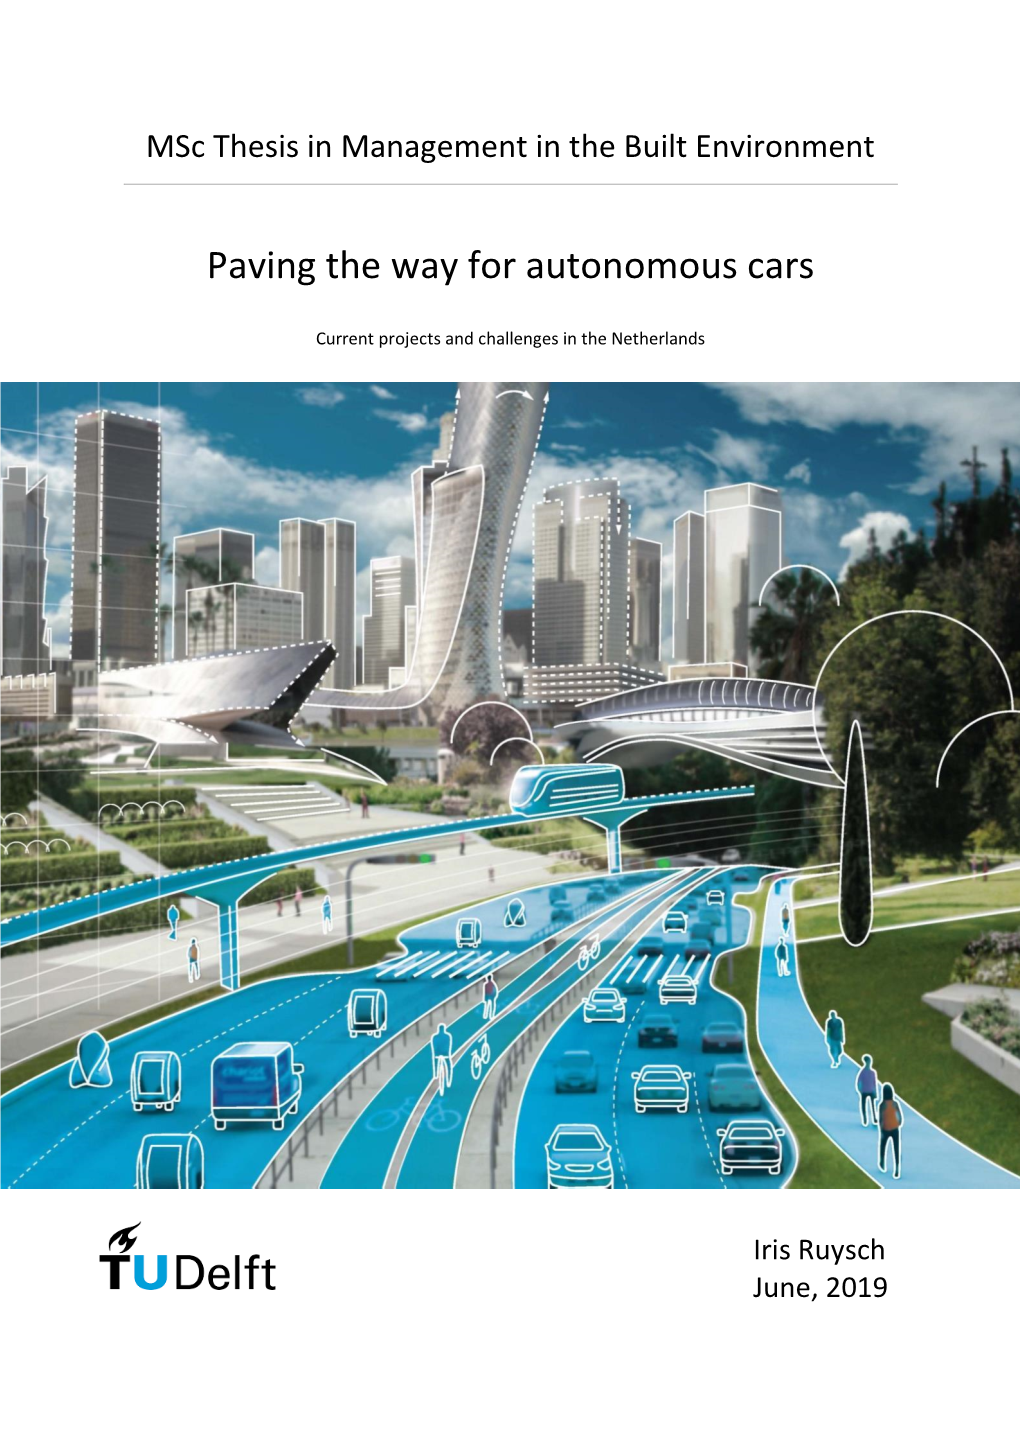 Paving the Way for Autonomous Cars